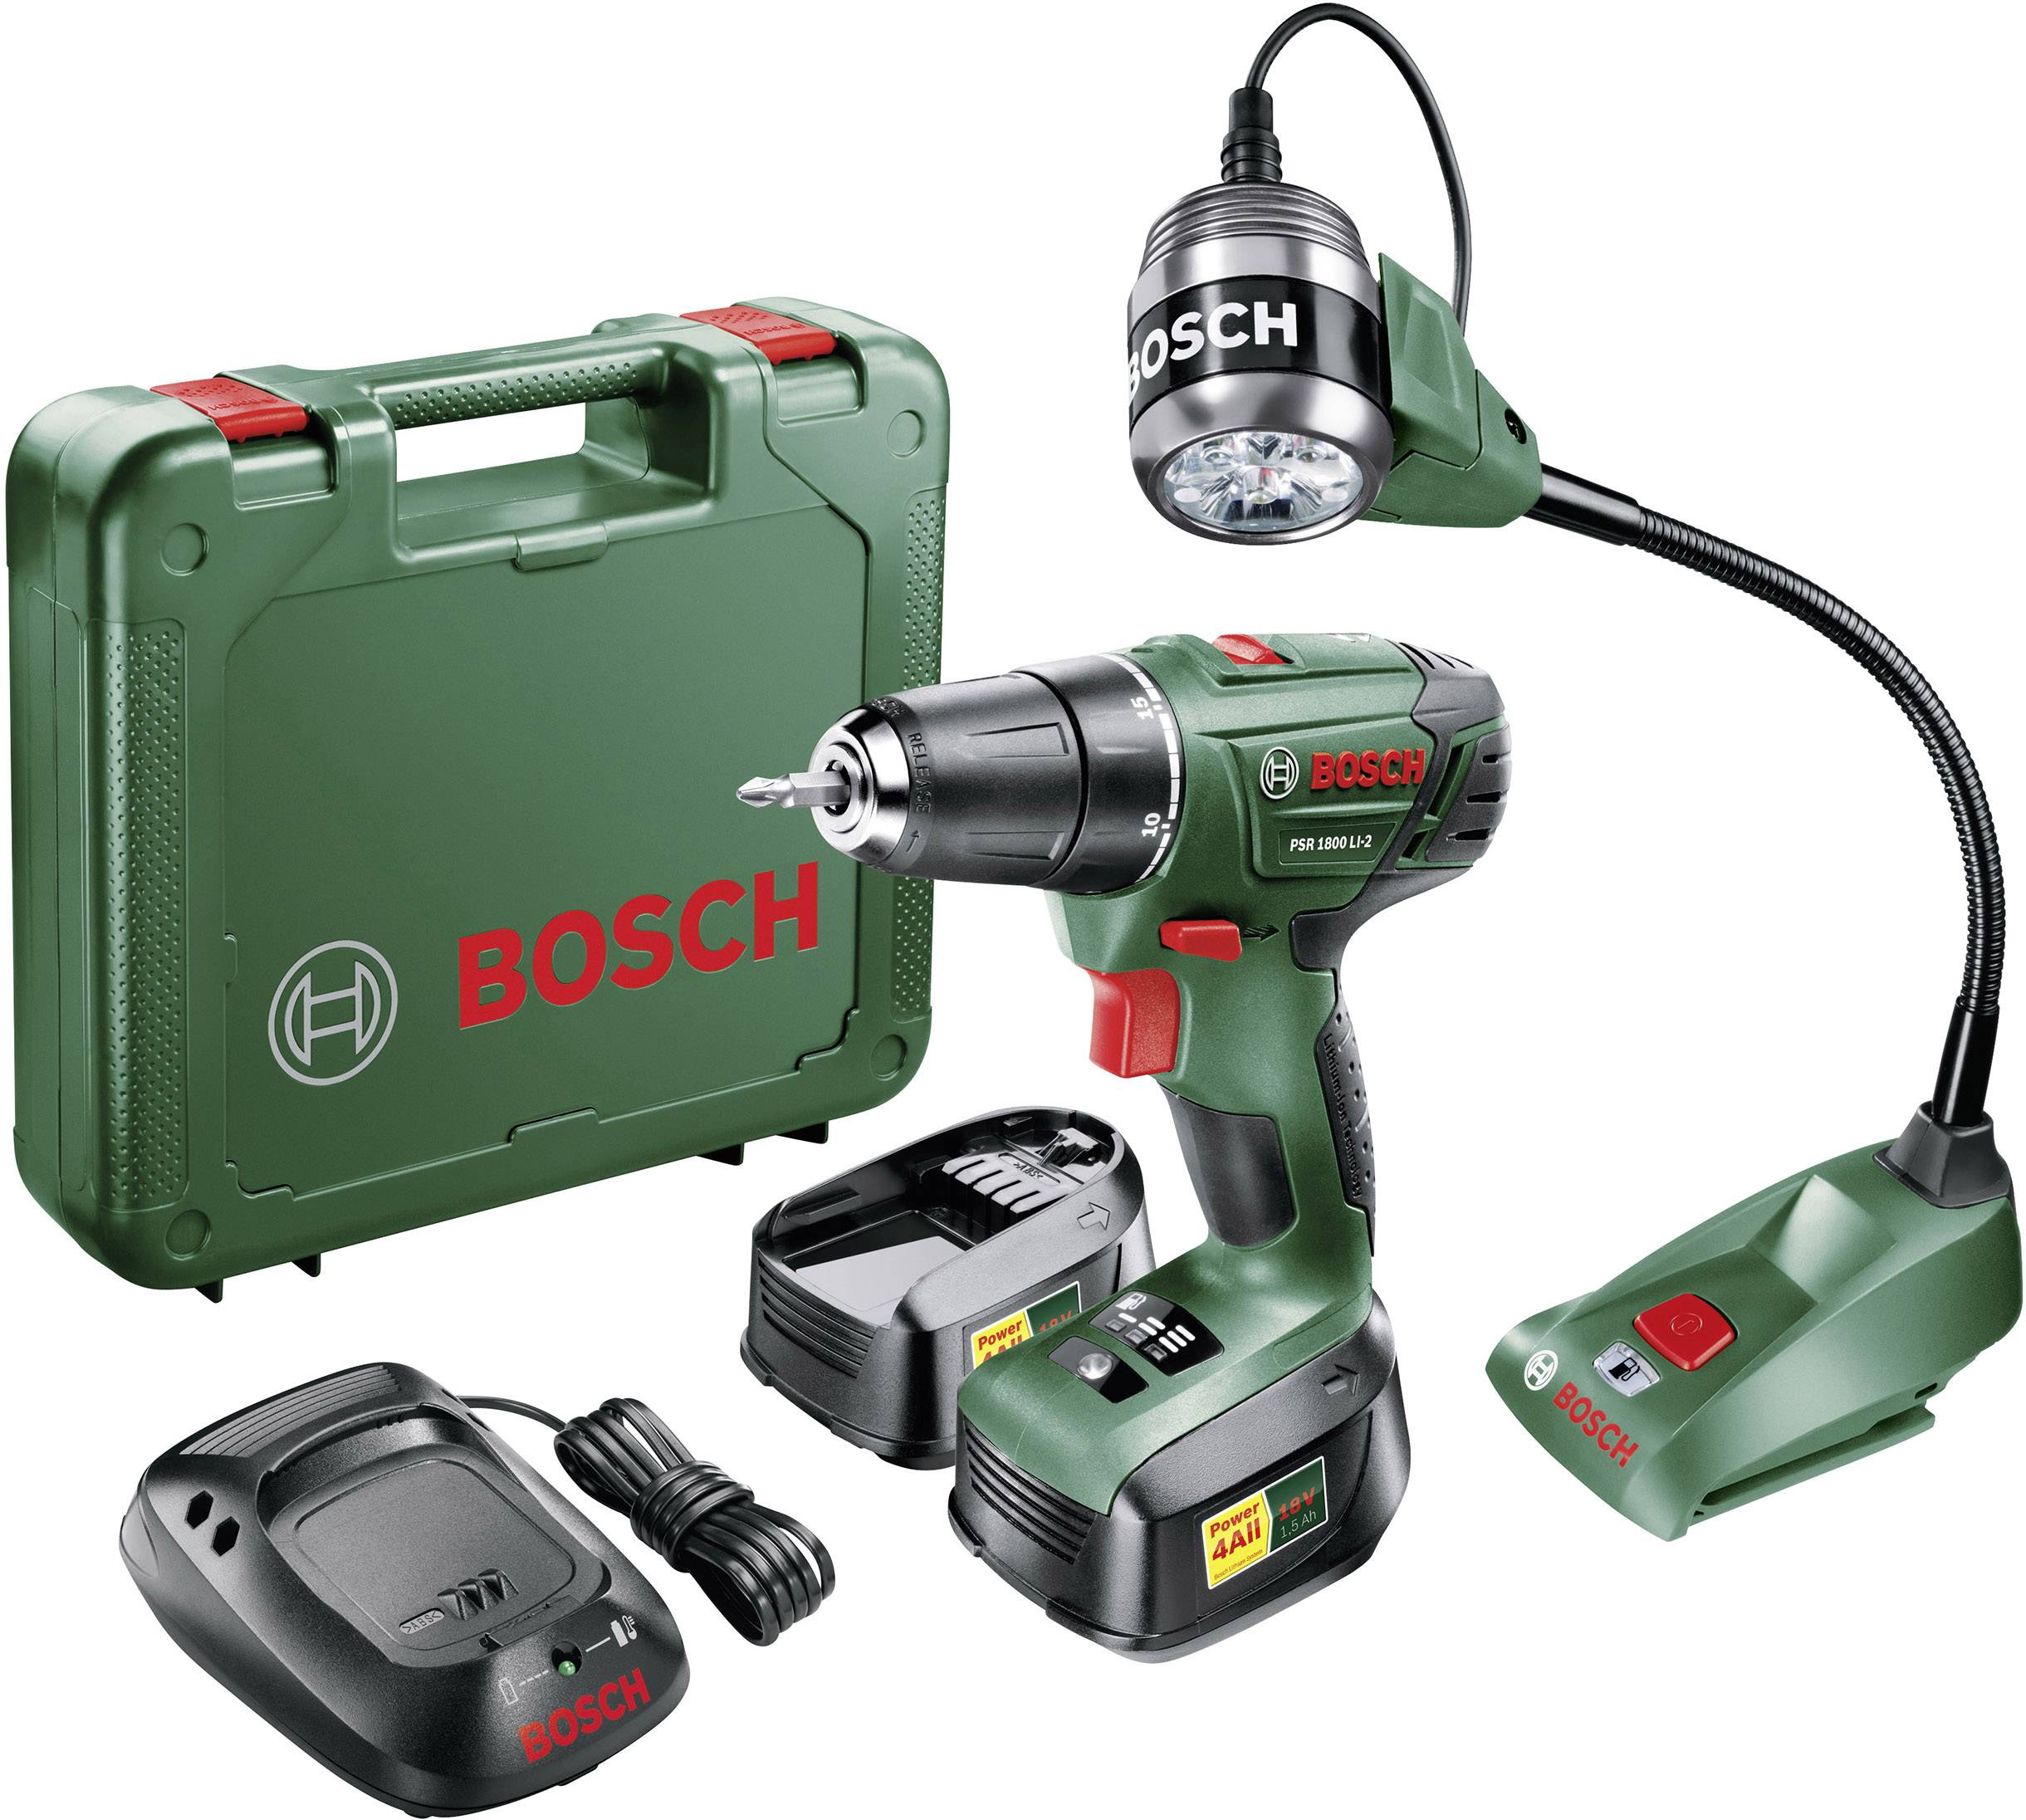 Bosch psr 1800 li 2. Bosch 1800 li. PSR 1800 li-2. Bosch 06039b5001. Bosch PSR 1800 li-2 запчасти.